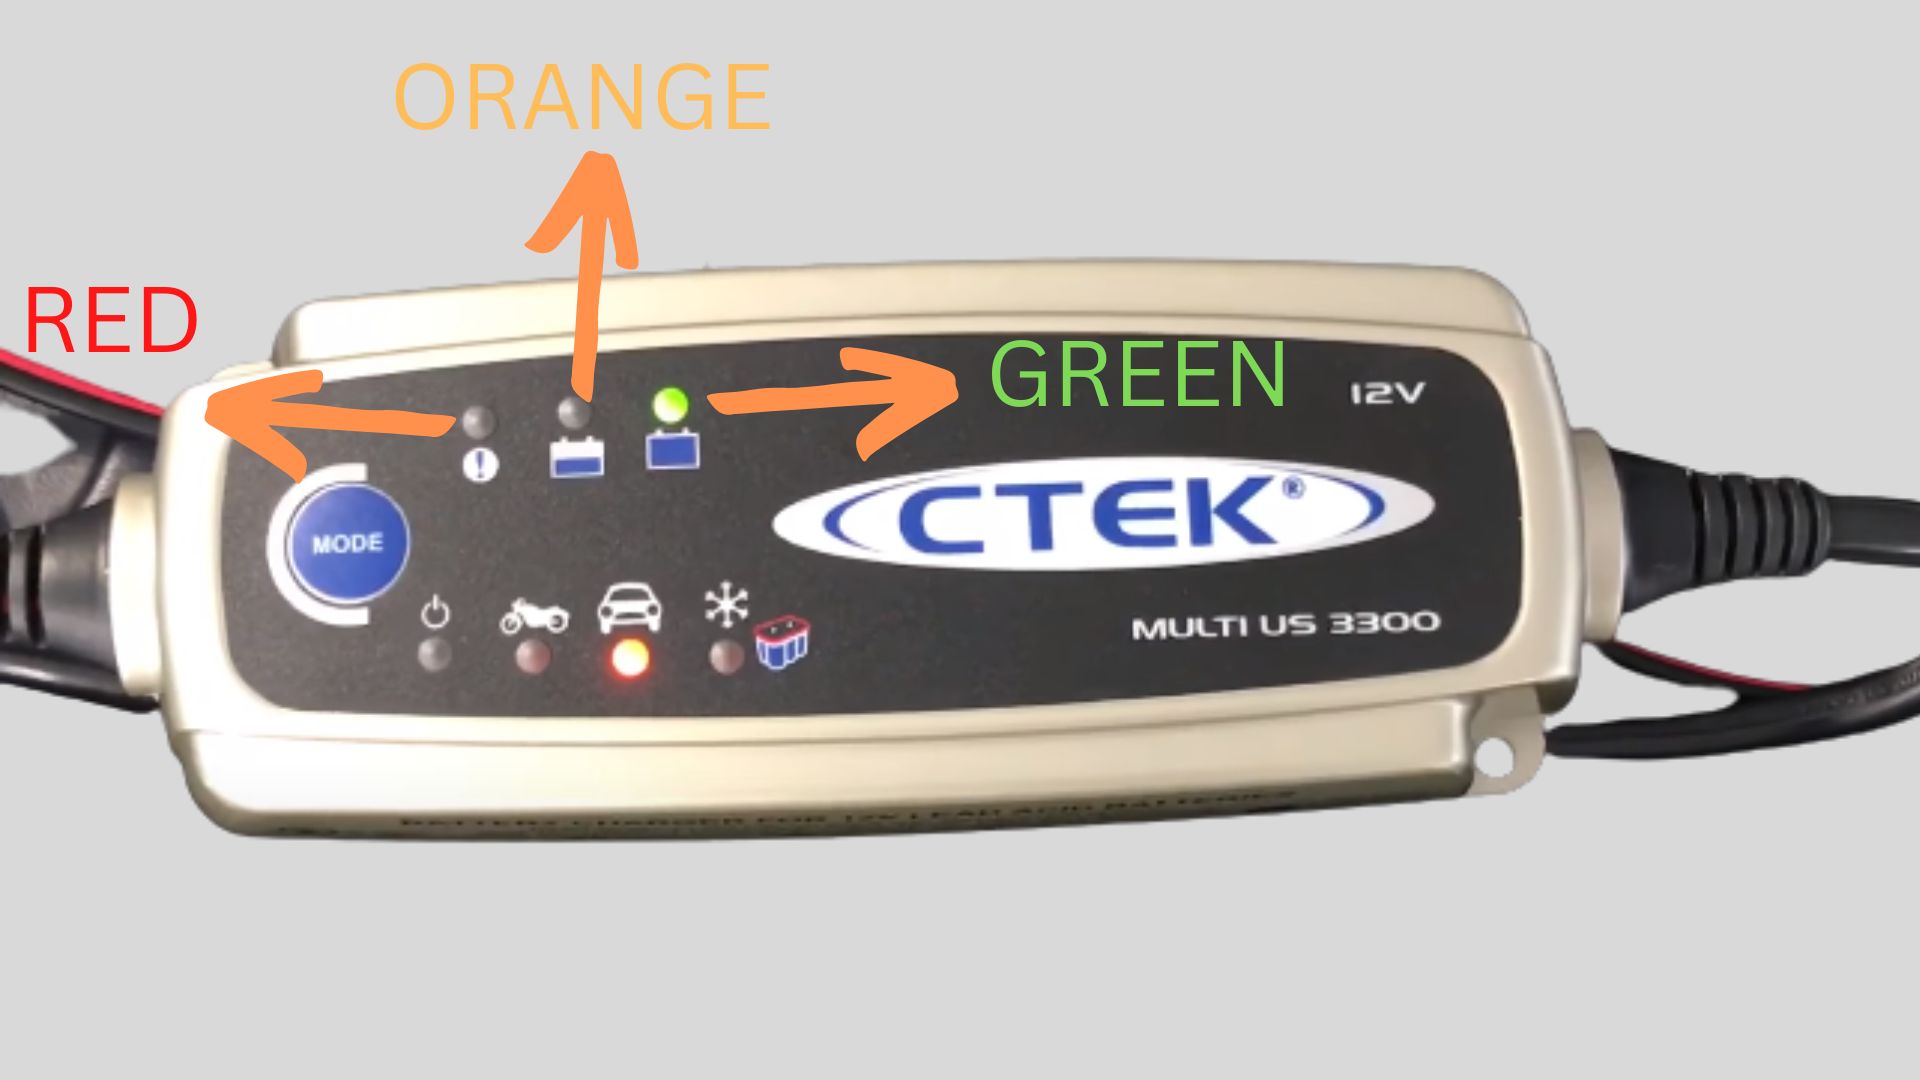 ctek charger flashing green, orange and red light